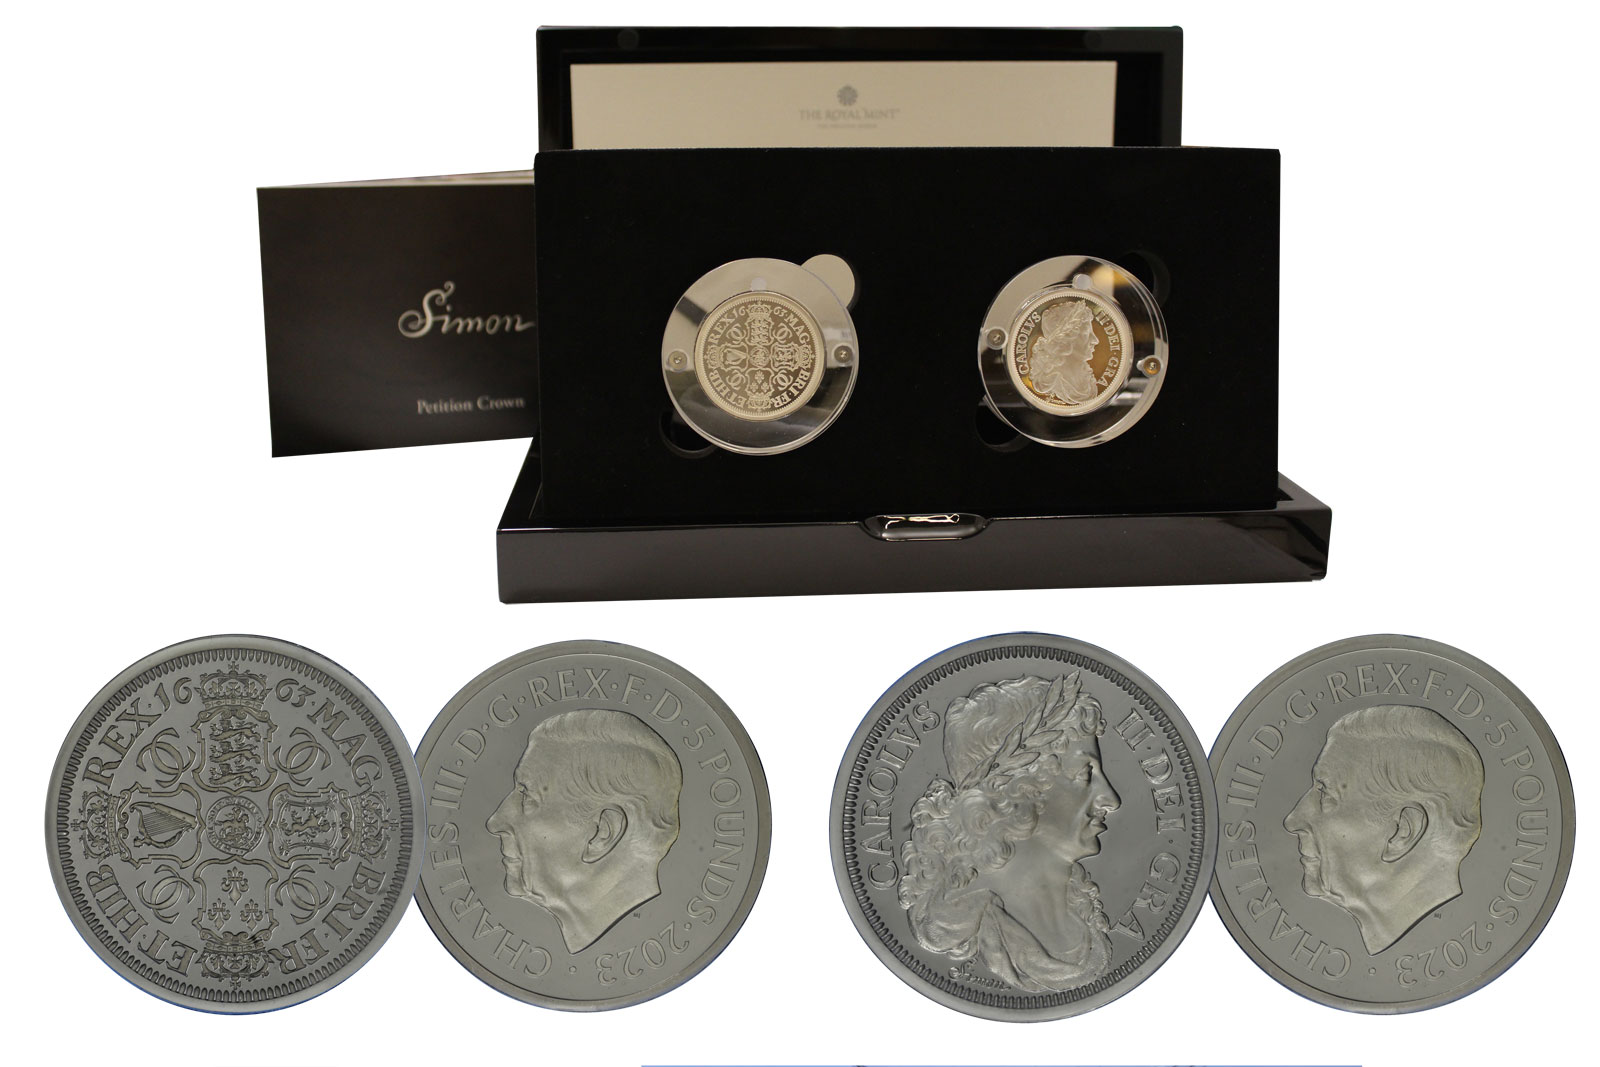 "Petition Crown di T.Simon" - set di 2 monete da 5 sterline gr. 62,42 in ag. 999/°°° - Tiratura 3250 pz 